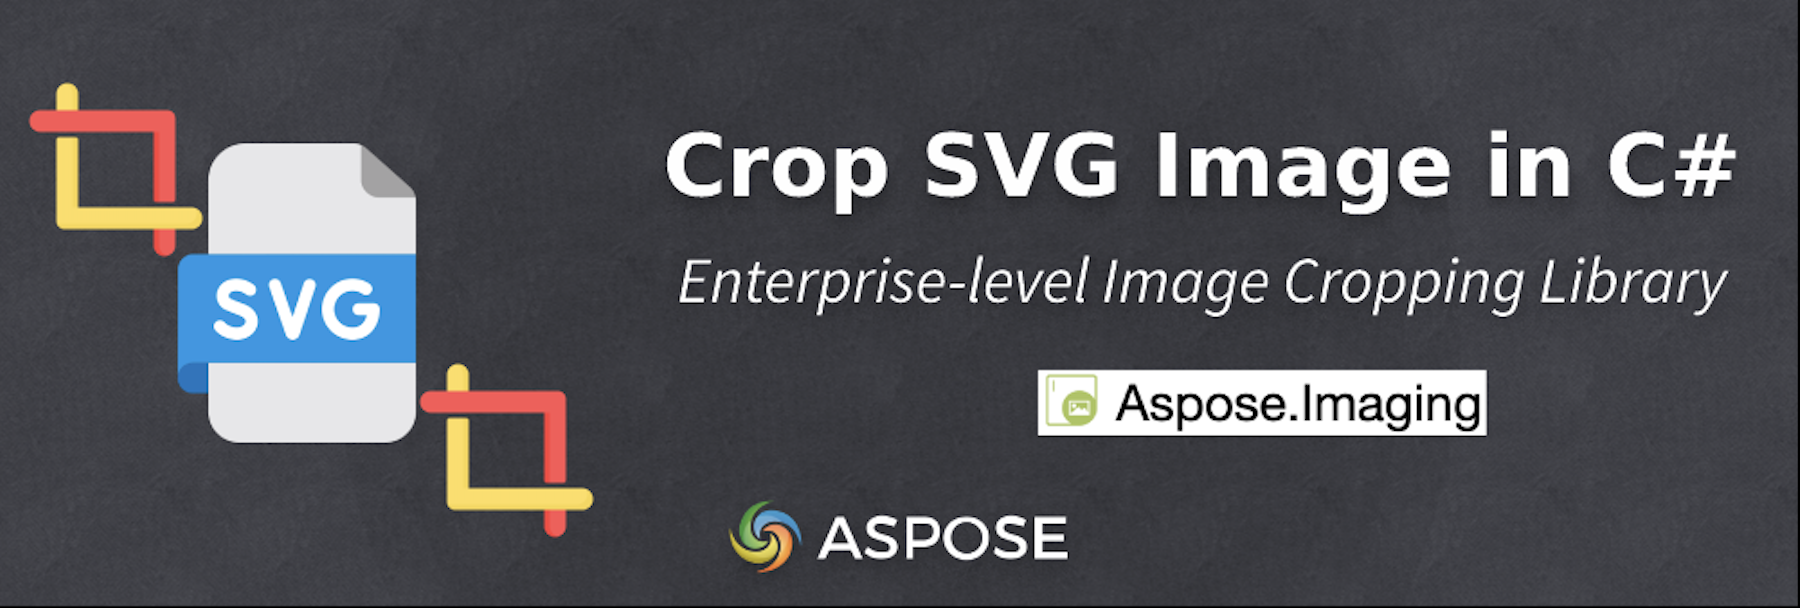 Crop SVG Image in C# - Crop Images Online